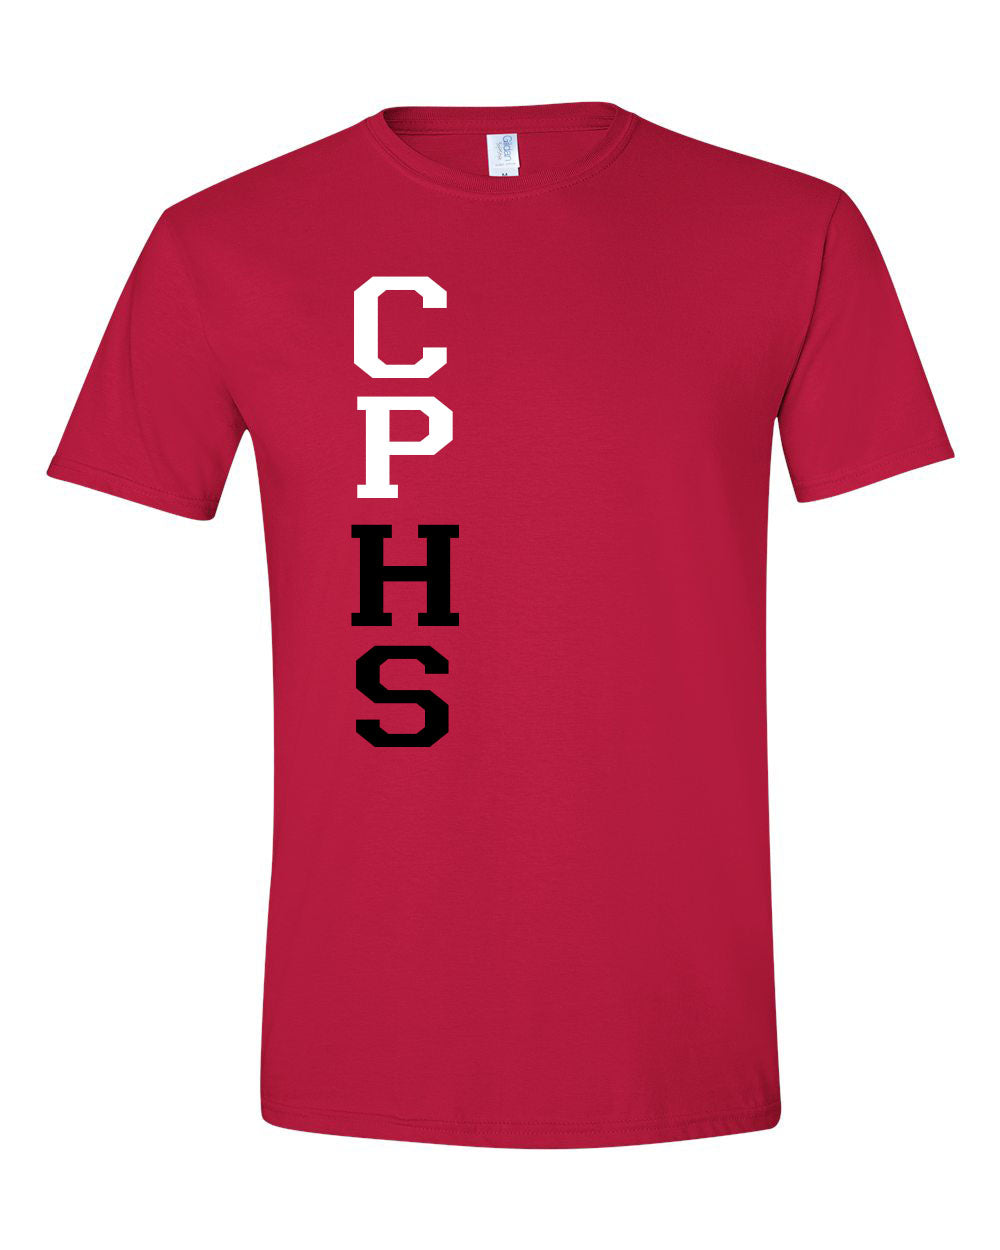 CPHS Side T-Shirt